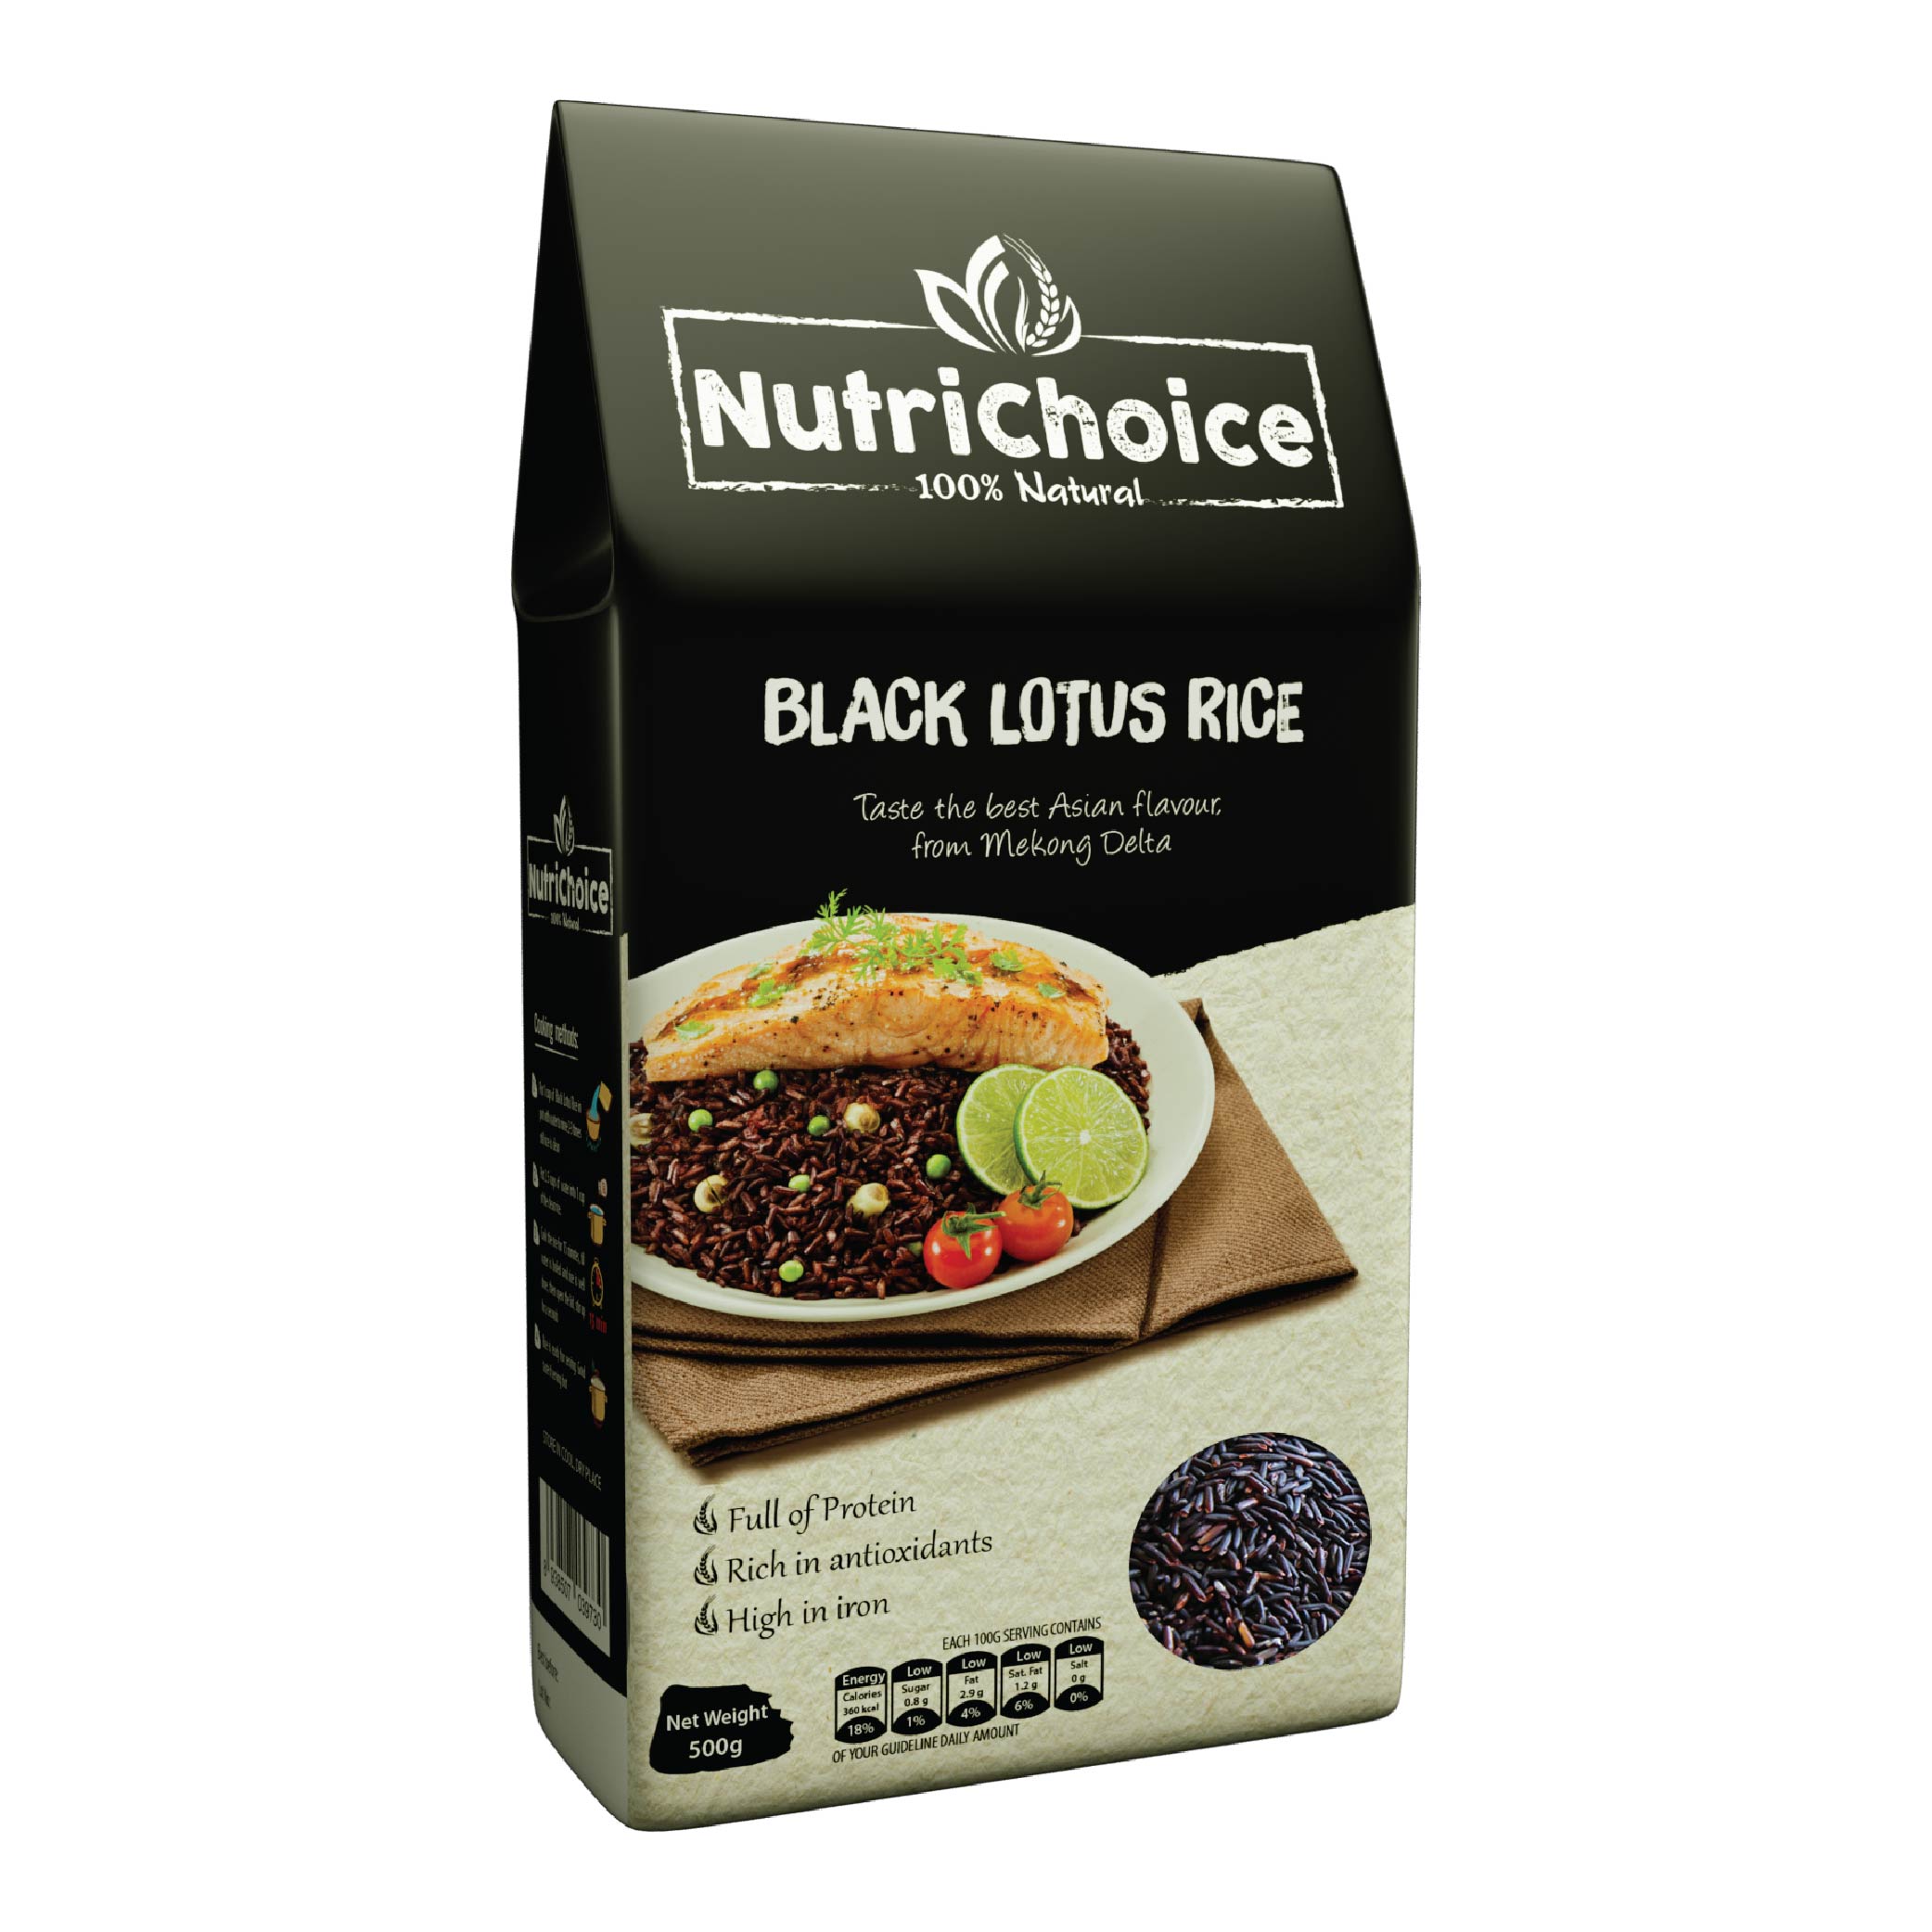 Gạo lứt đen dinh dưỡng - Gạo Tím Than Nutrichoice 500gr -  Thơm ngon dẻo ngọt, ăn là thích - Rất tốt sức khỏe, giàu chất chống oxy hóa, giàu chất Sắt, chất Xơ - Tốt cho người bệnh tim mạch, béo phì, tiểu đường.